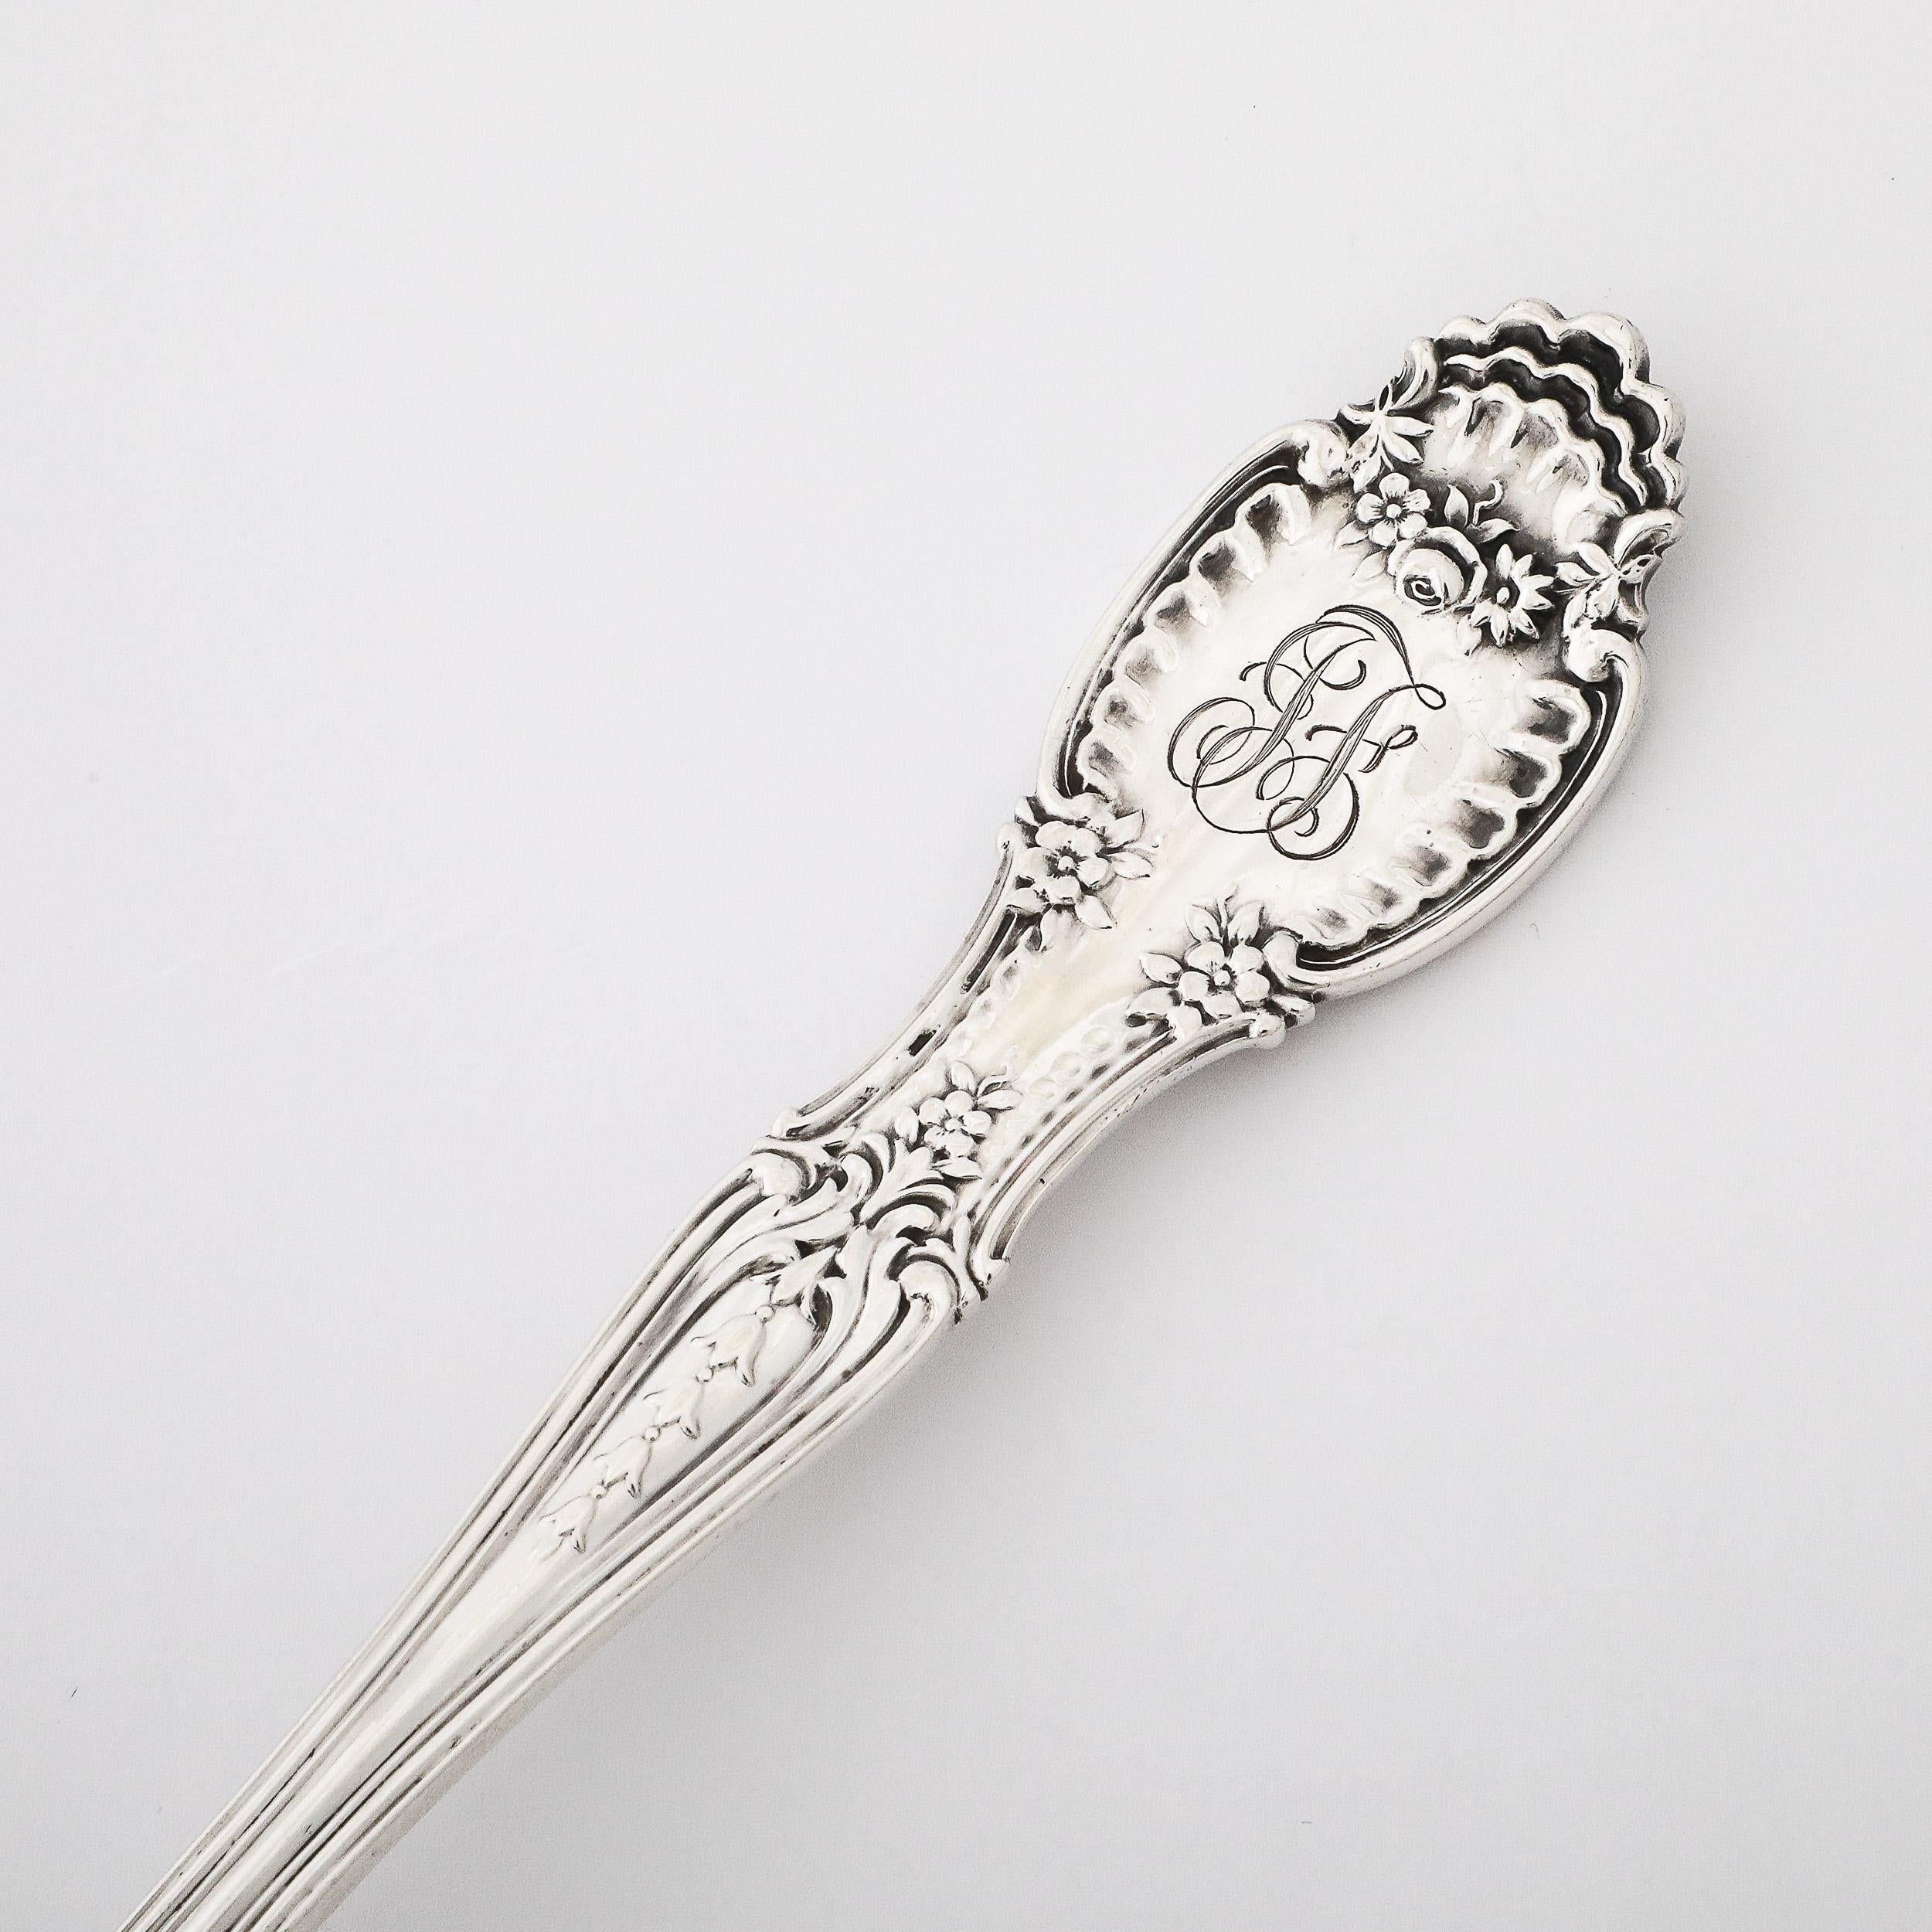 Cette magnifique cuillère de service percée en argent sterling Tiffany and Co. du XIXe siècle Pat IX95 T à motif floral festonné provient des États-Unis à la fin du XIXe siècle. Ce modèle présente un niveau de détail incroyable et un magnifique